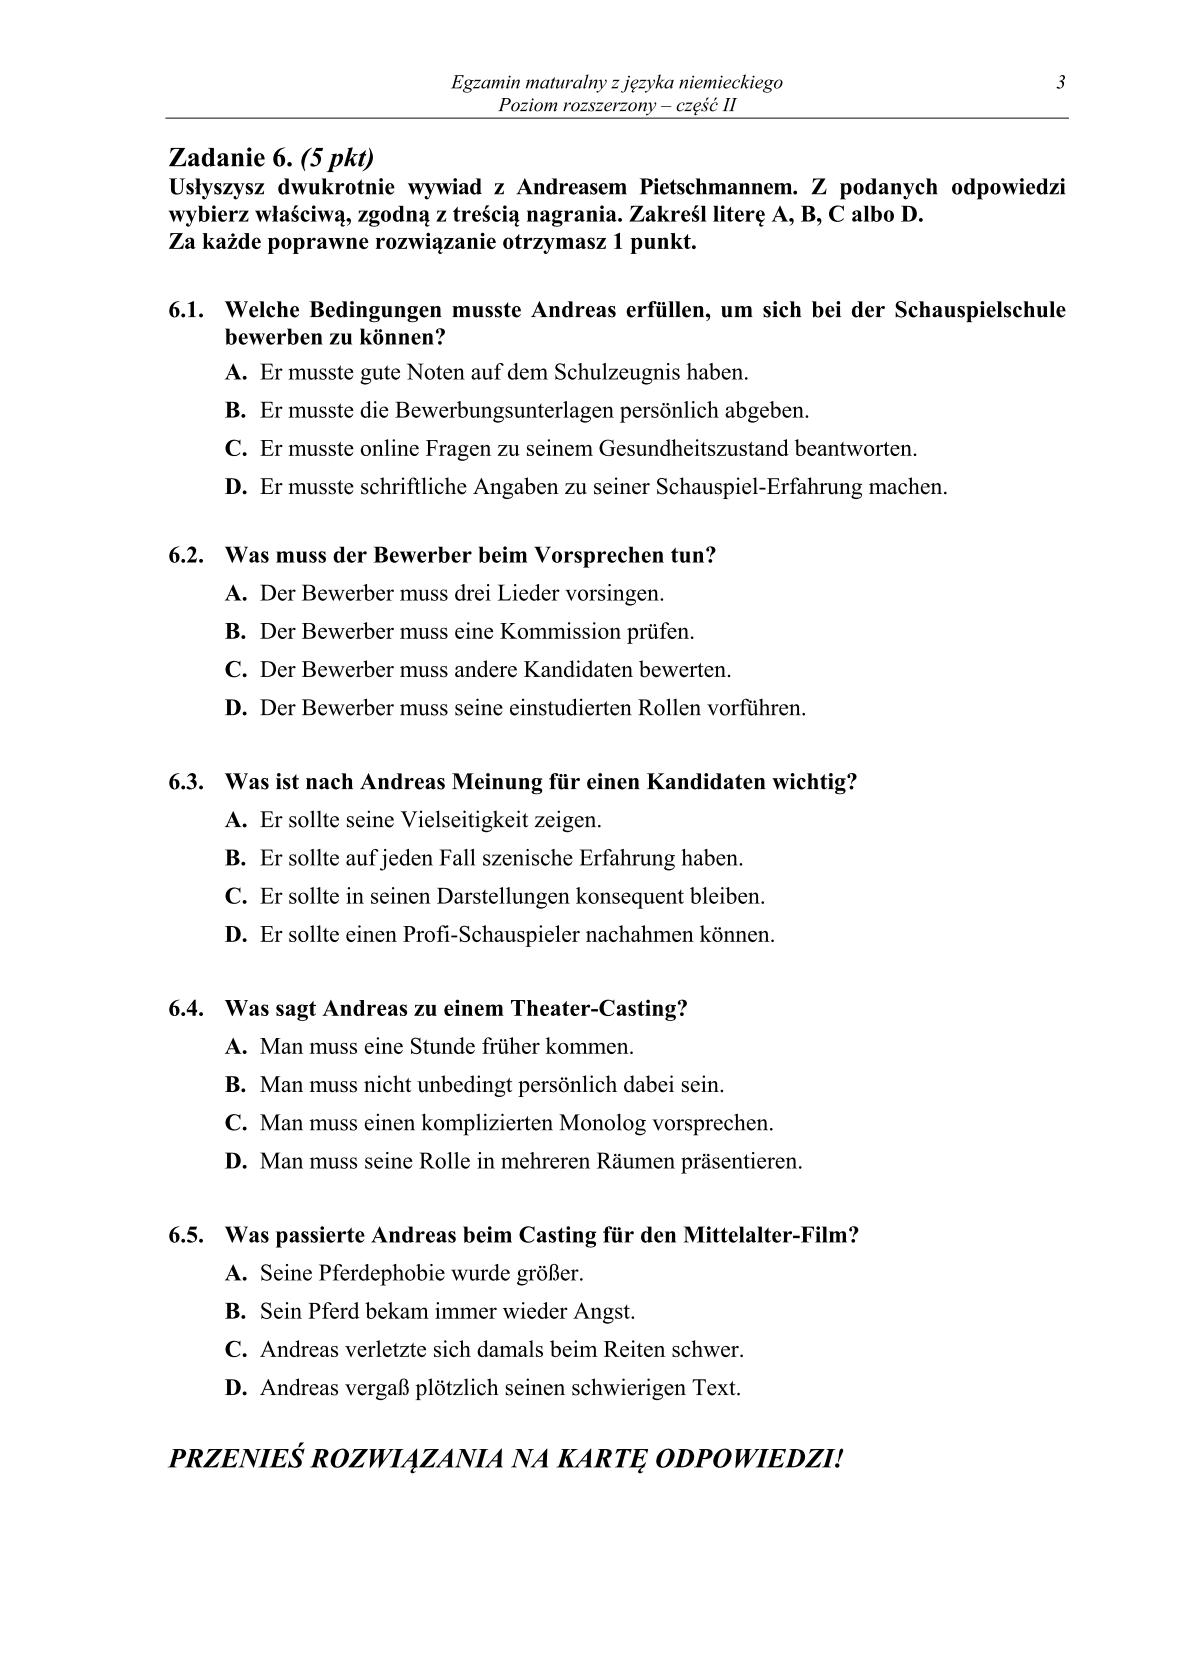 pytania-jezyk-niemiecki-poziom-rozszerzony-czesc-II-matura-2014-str.3